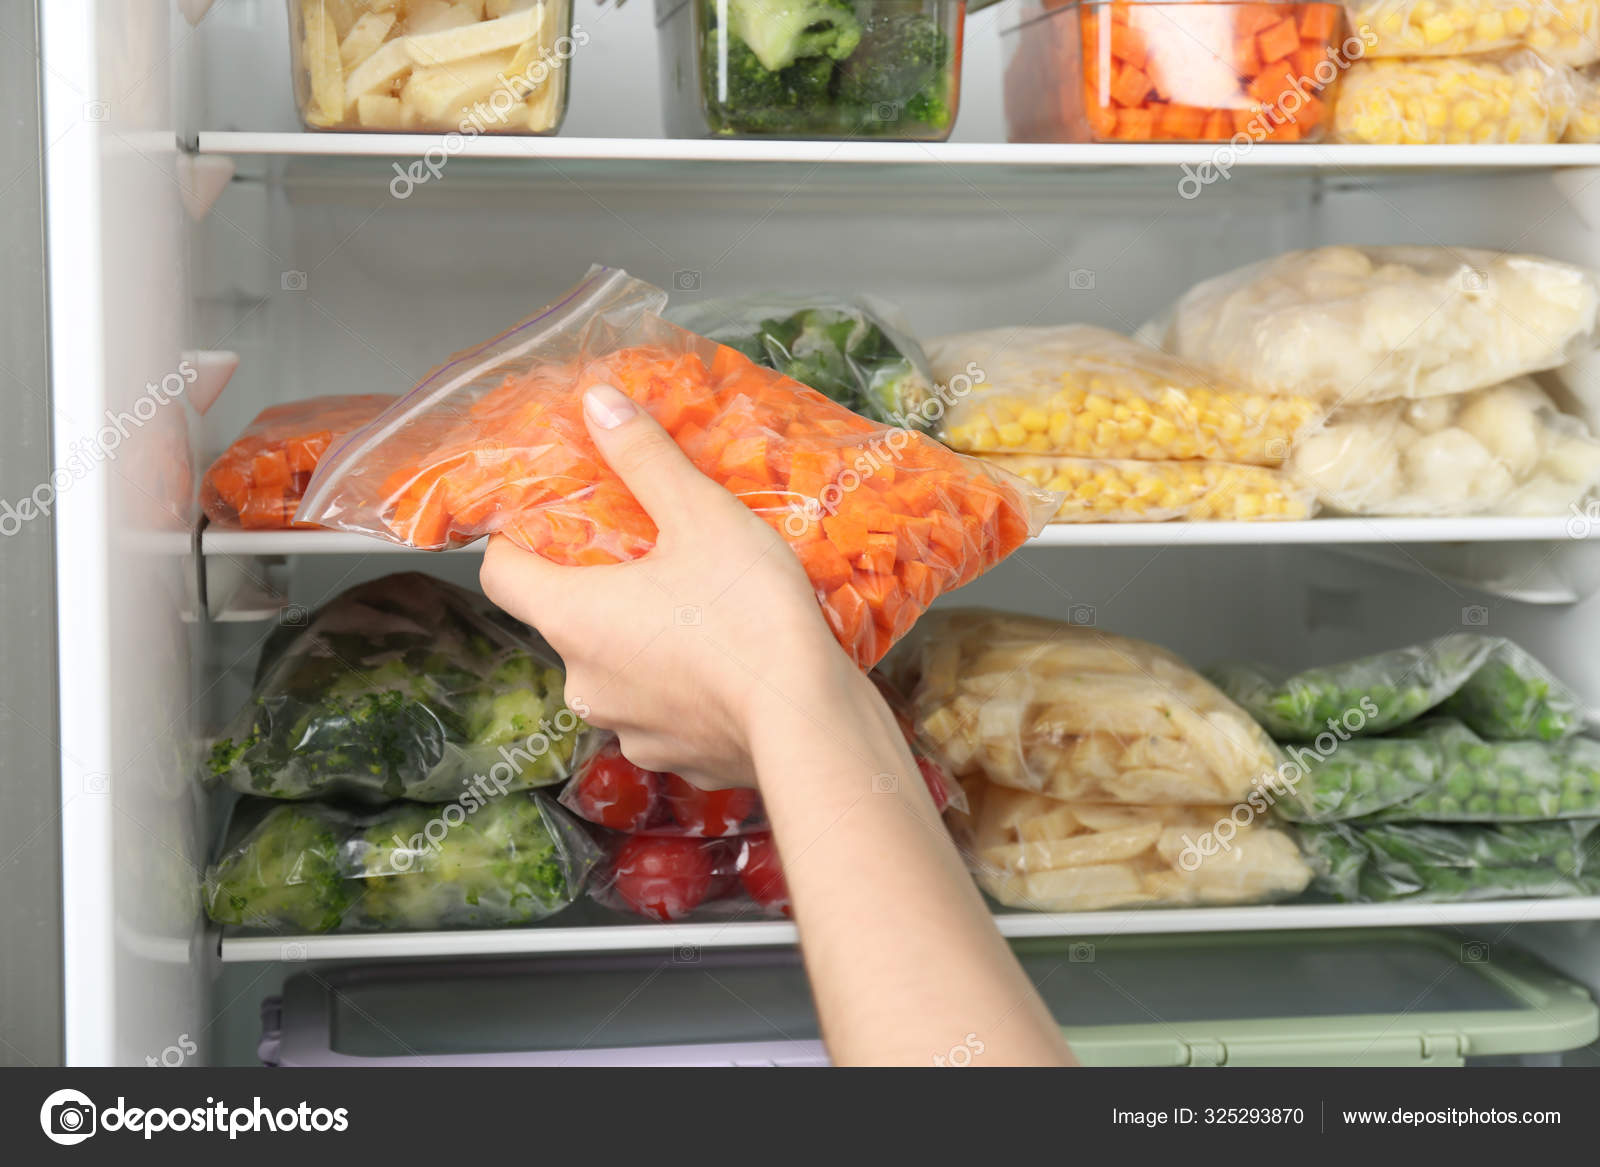 Замораживаем сохраняя витамины. Хранение продуктов. Овощи для заморозки. Продукты в морозилке. Заготовки в морозилку овощи.